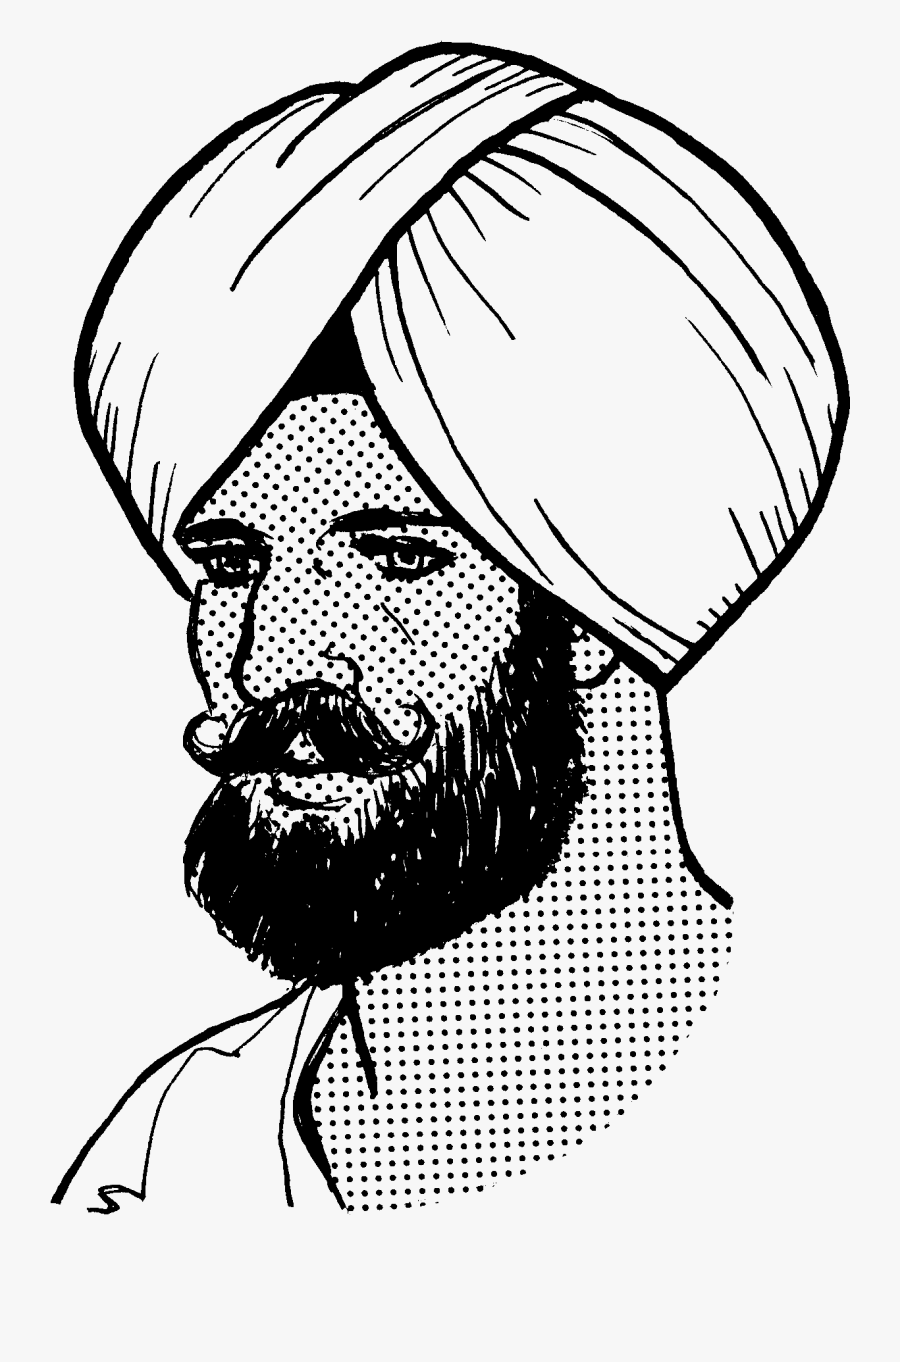 Sikh Turban Png Transparent Sikh Turban Images - Turban Black And White, Transparent Clipart